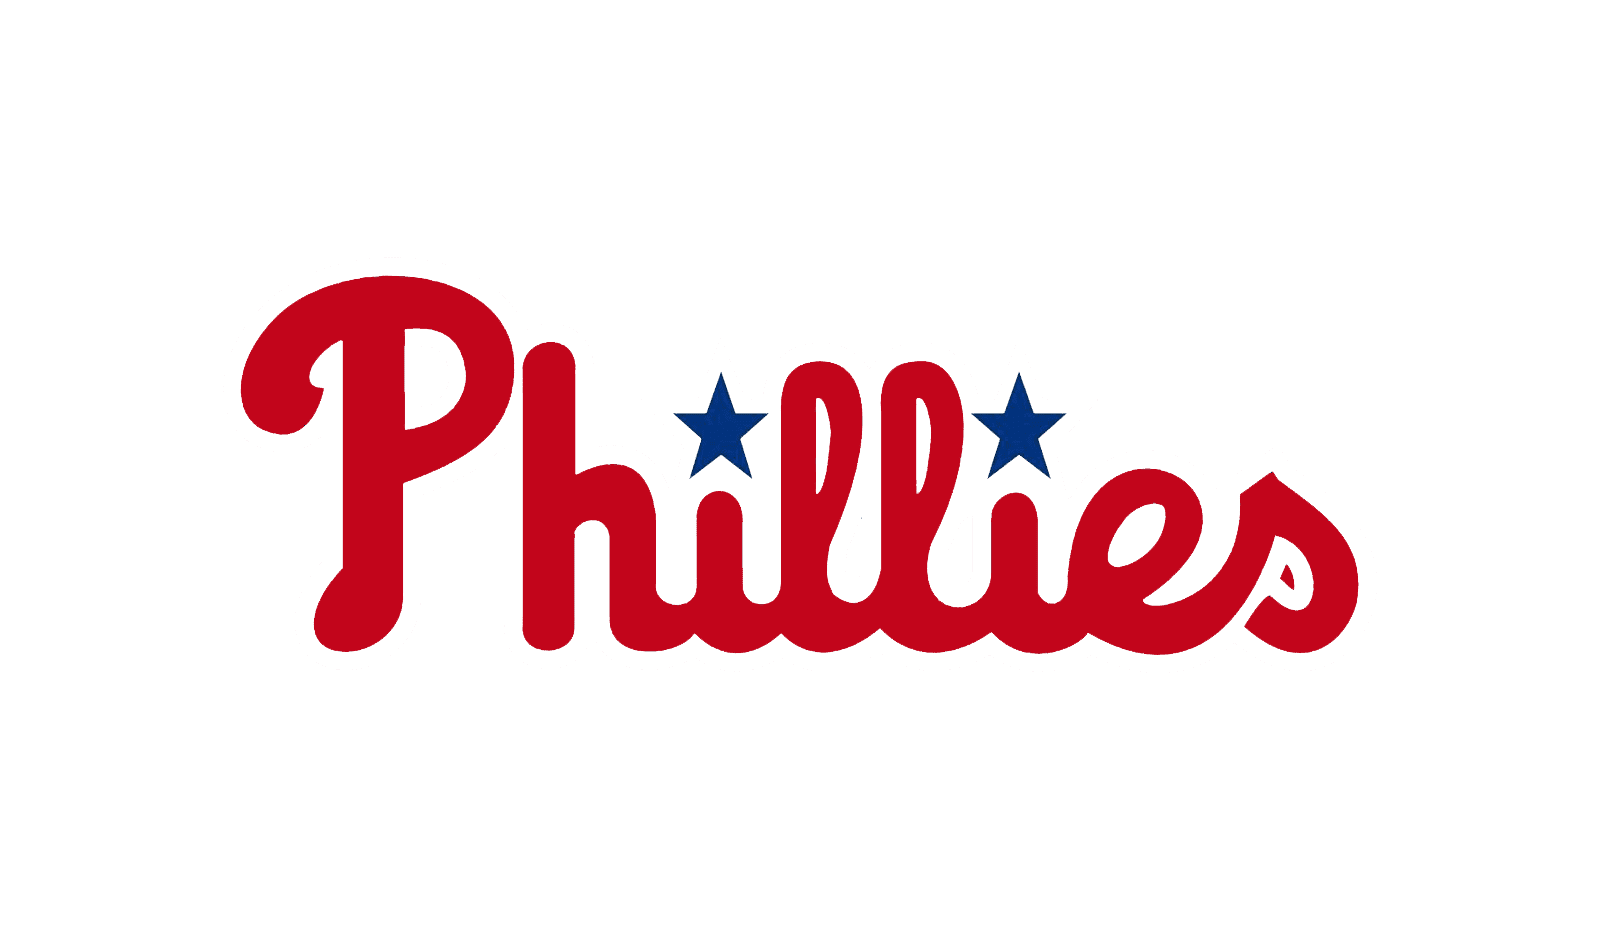 Phillies de Philadelphie 2023 Rotation projetée des lanceurs